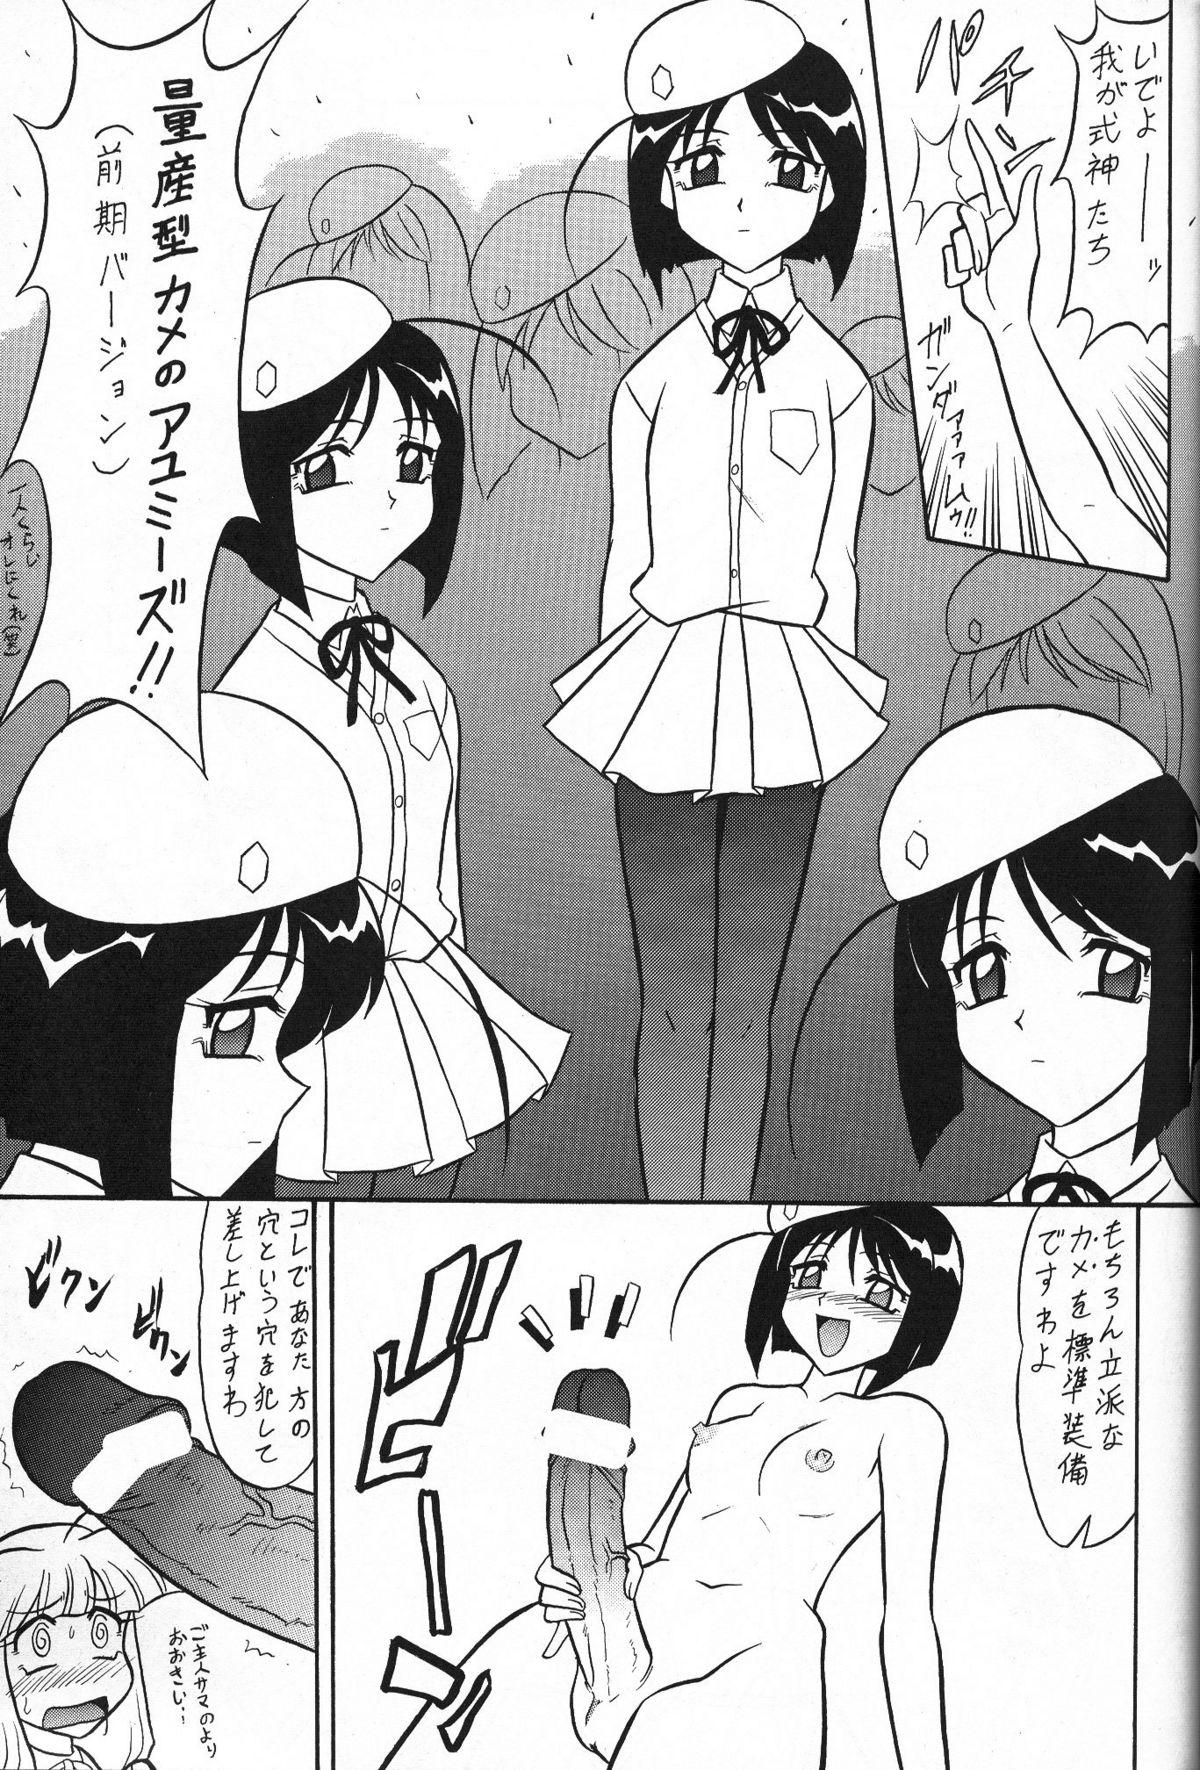 Tits Sugoi Ikioi 13 - Tenshi no shippo Pissing - Page 6